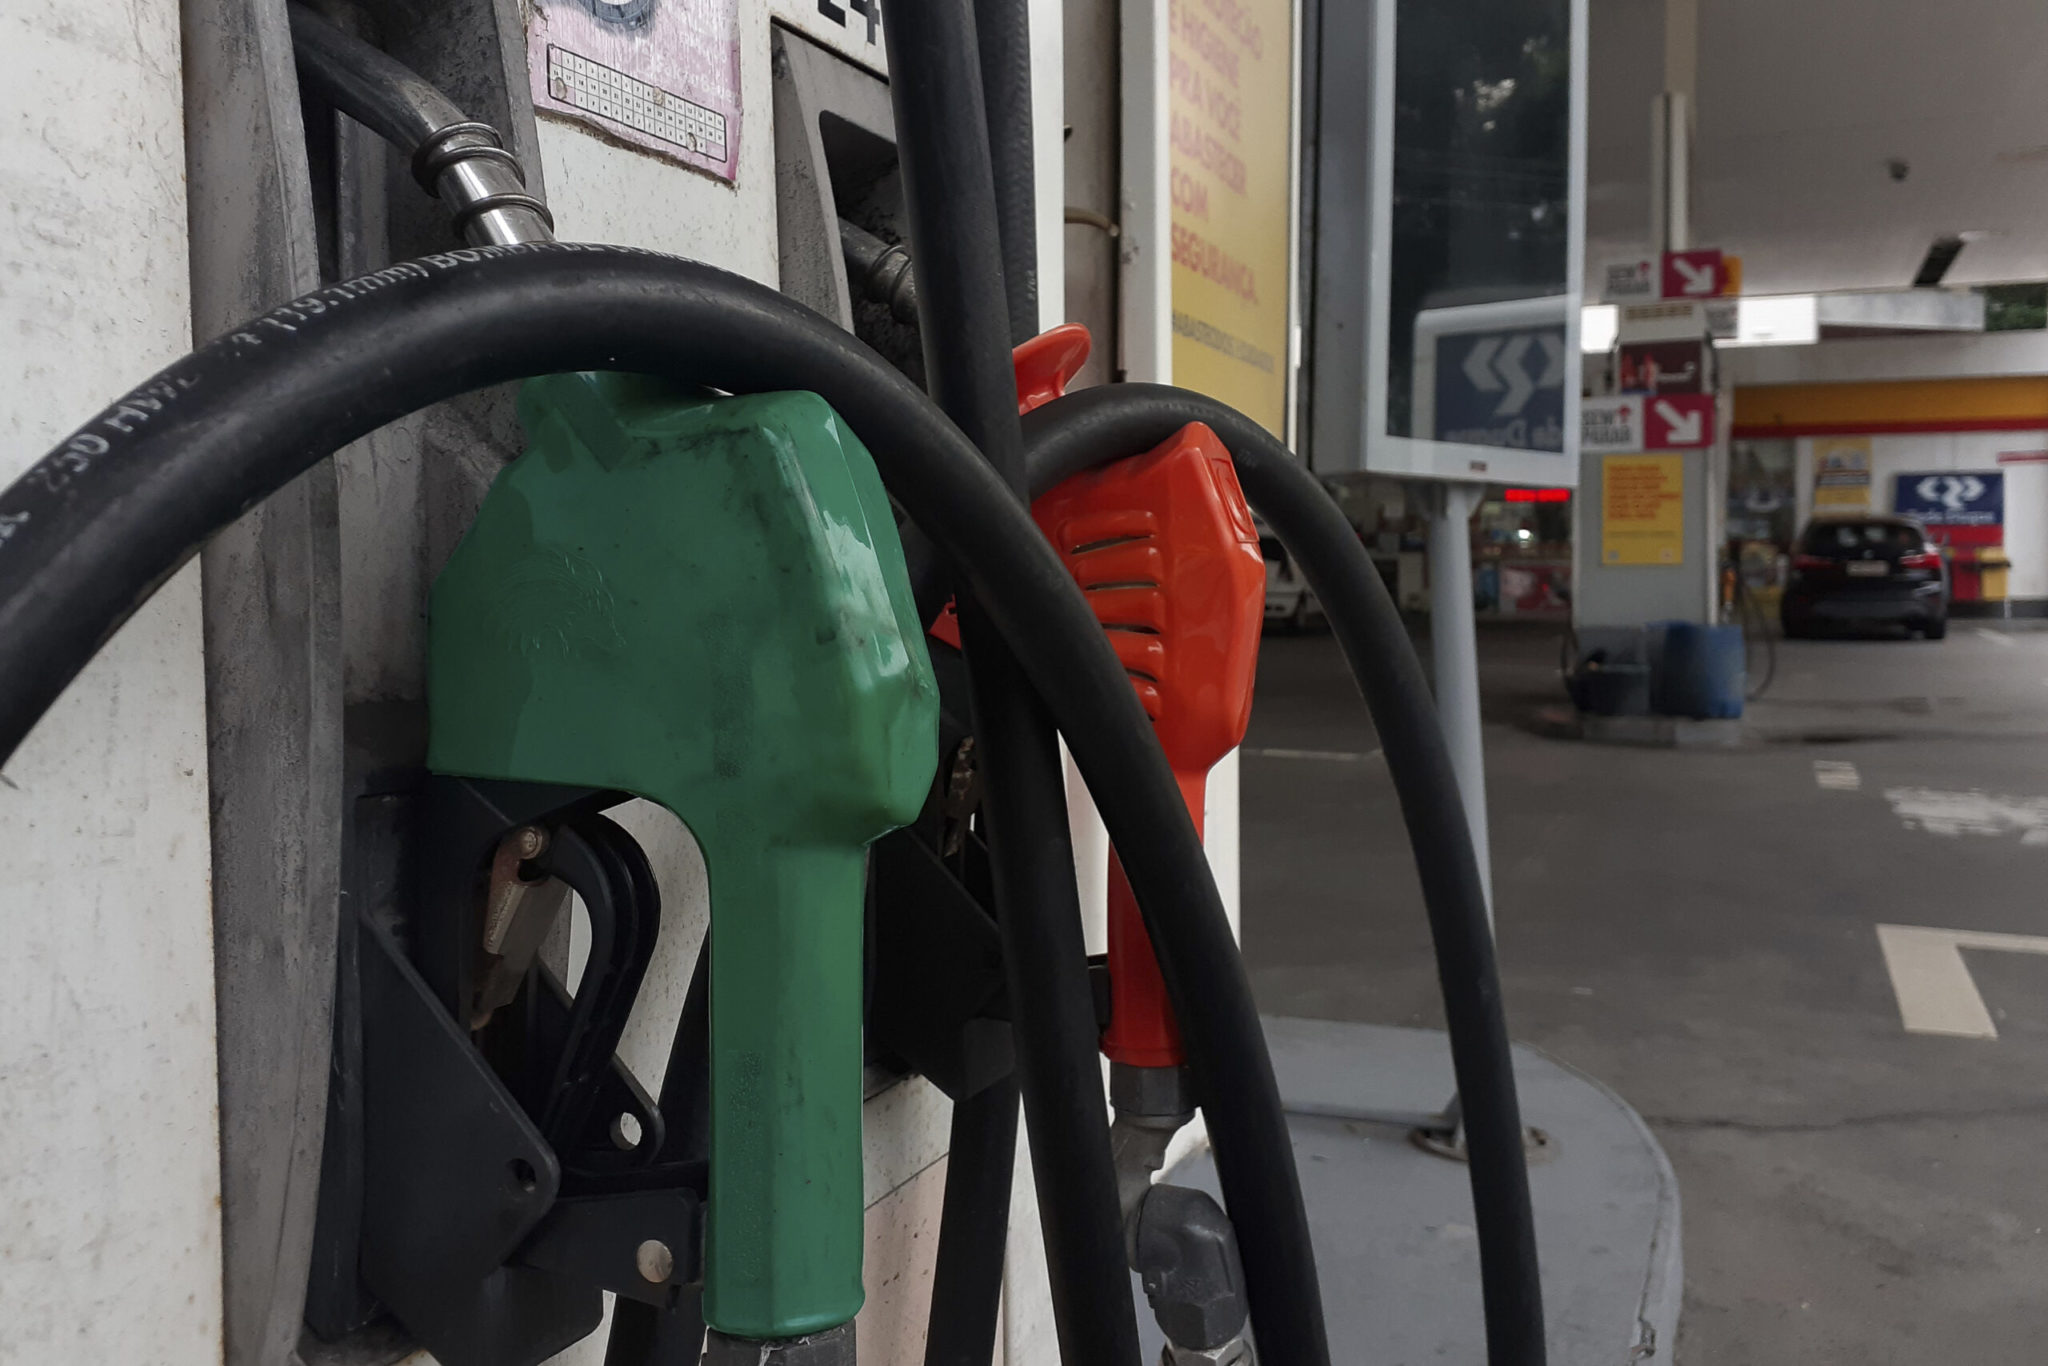 Gasolina cara não é culpa do Estado e sim do Fator Petrobrás, aponta Sindifiscal/MS